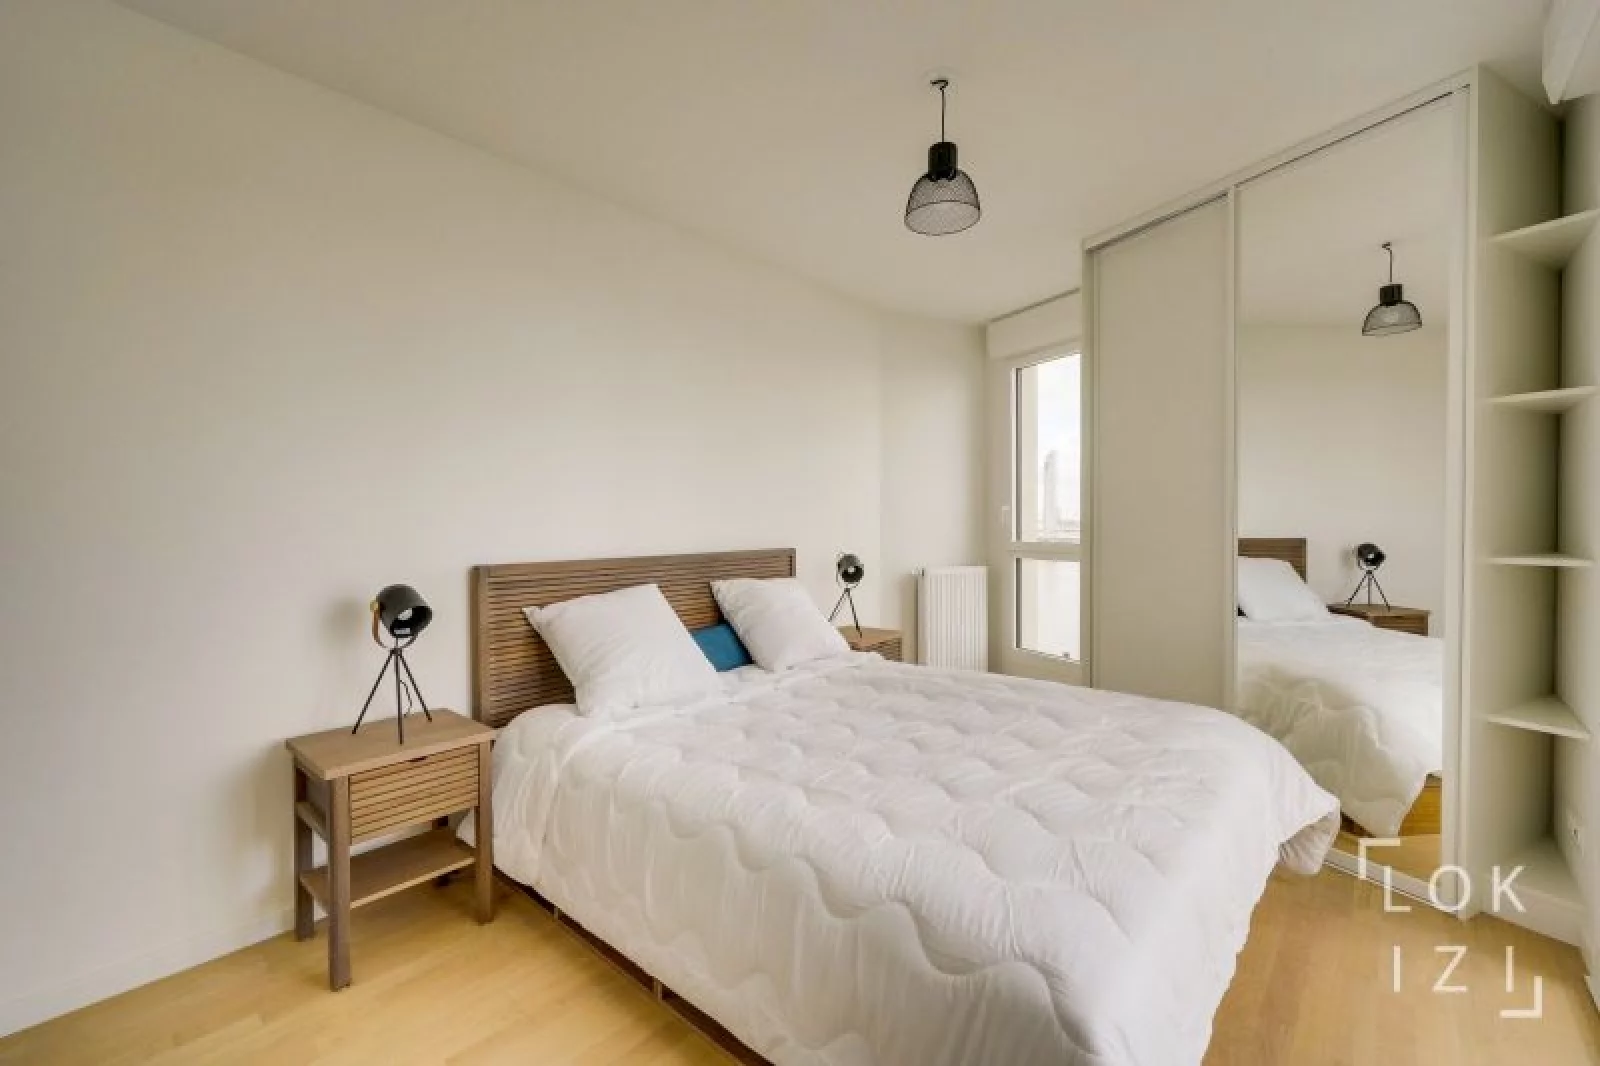 Location appartement T4 meublé de 83m² (Bordeaux - La Bastide)